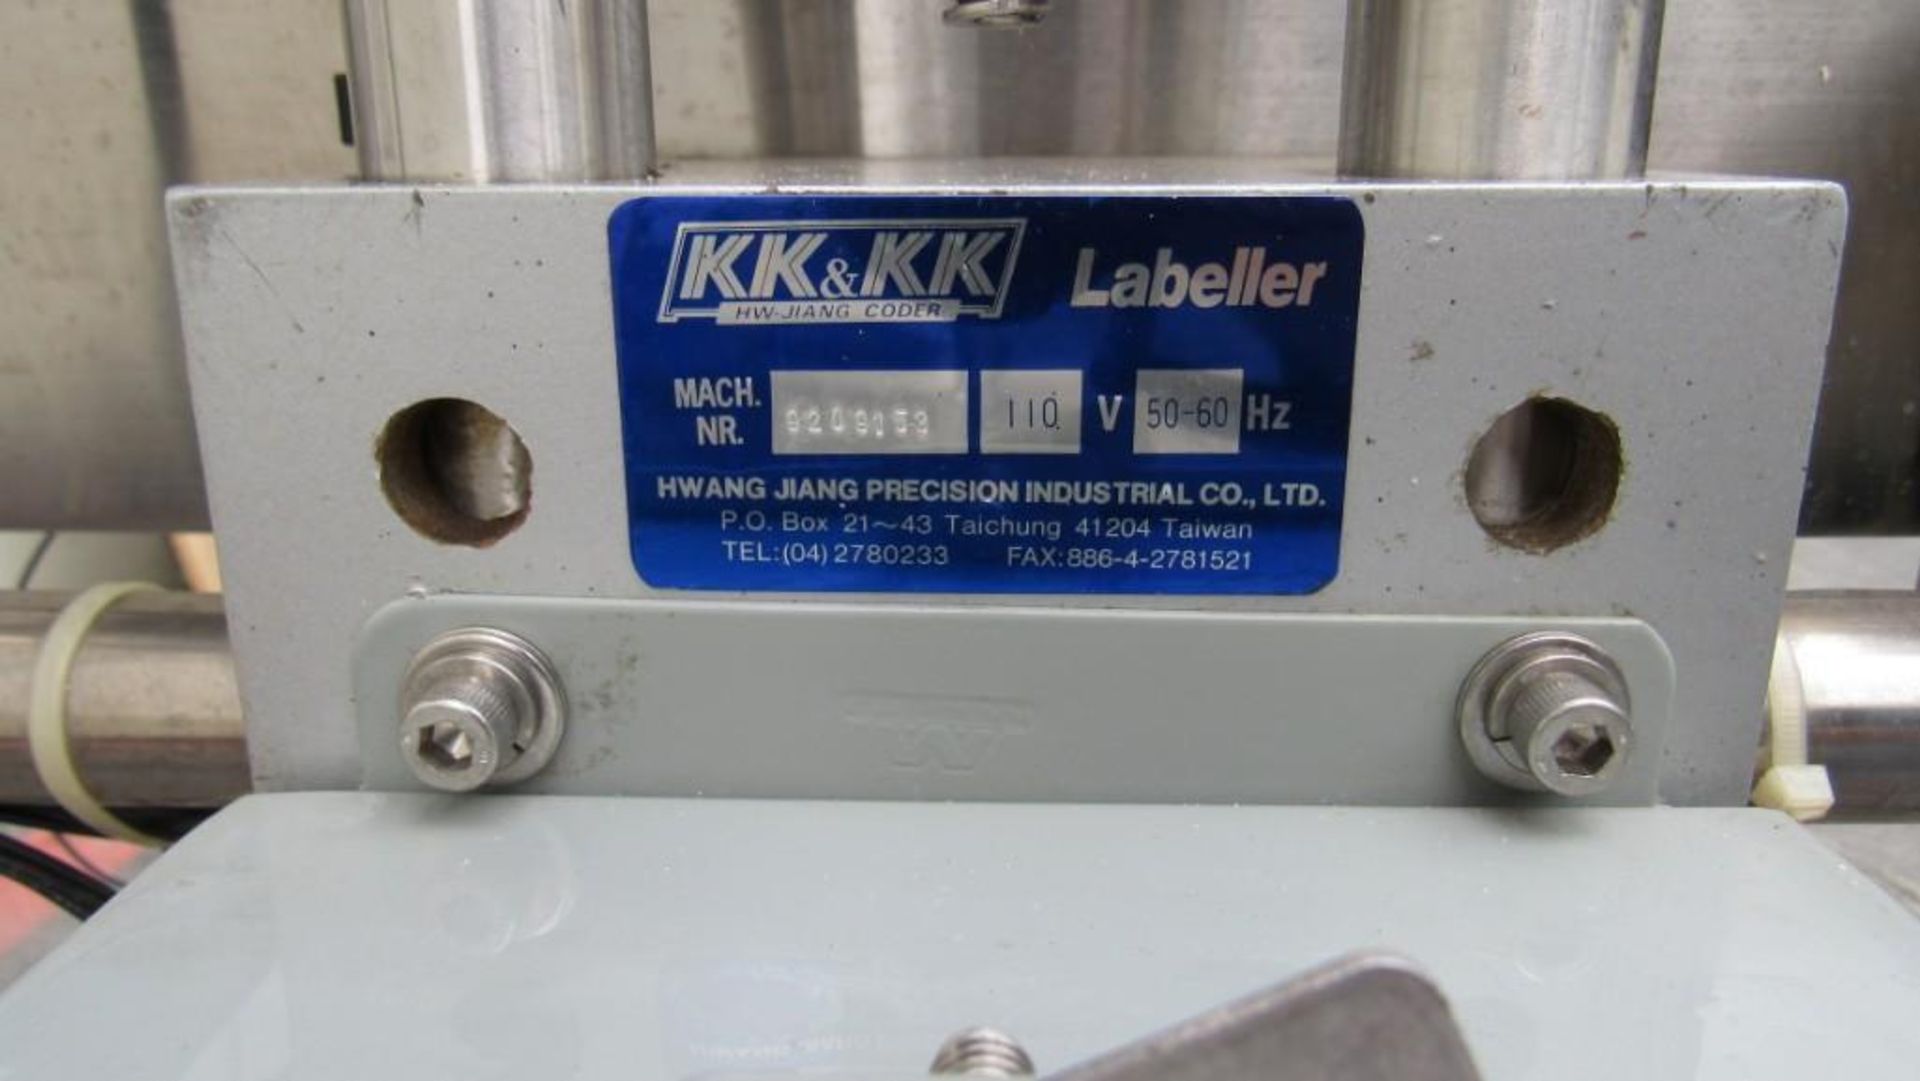 1-Used Kk&kk labeller - Image 12 of 19